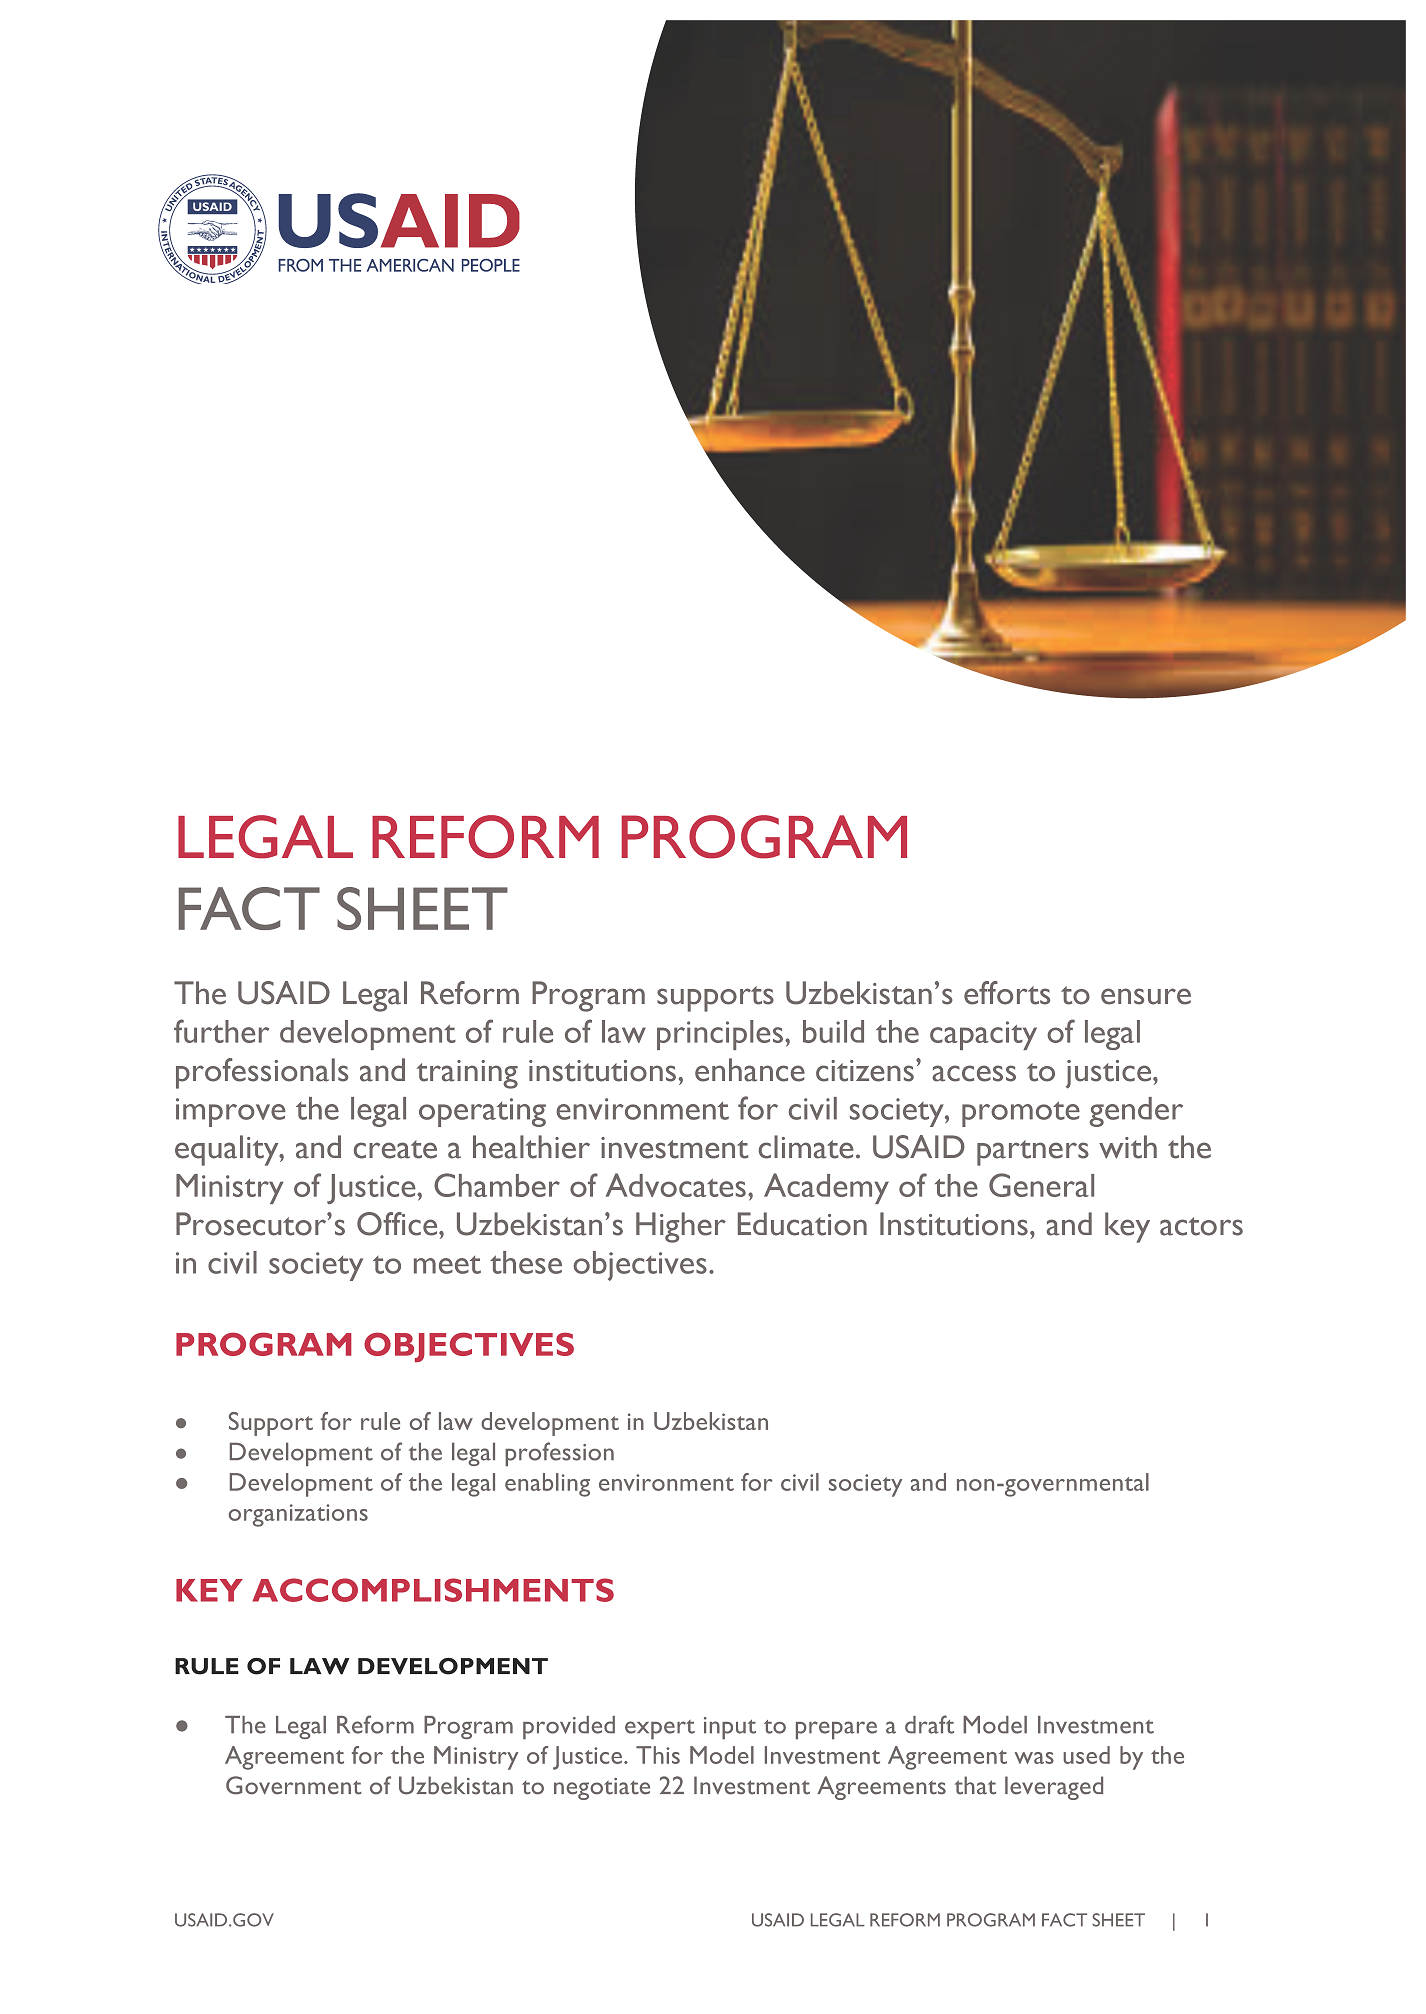 USAID Legal Reform Program